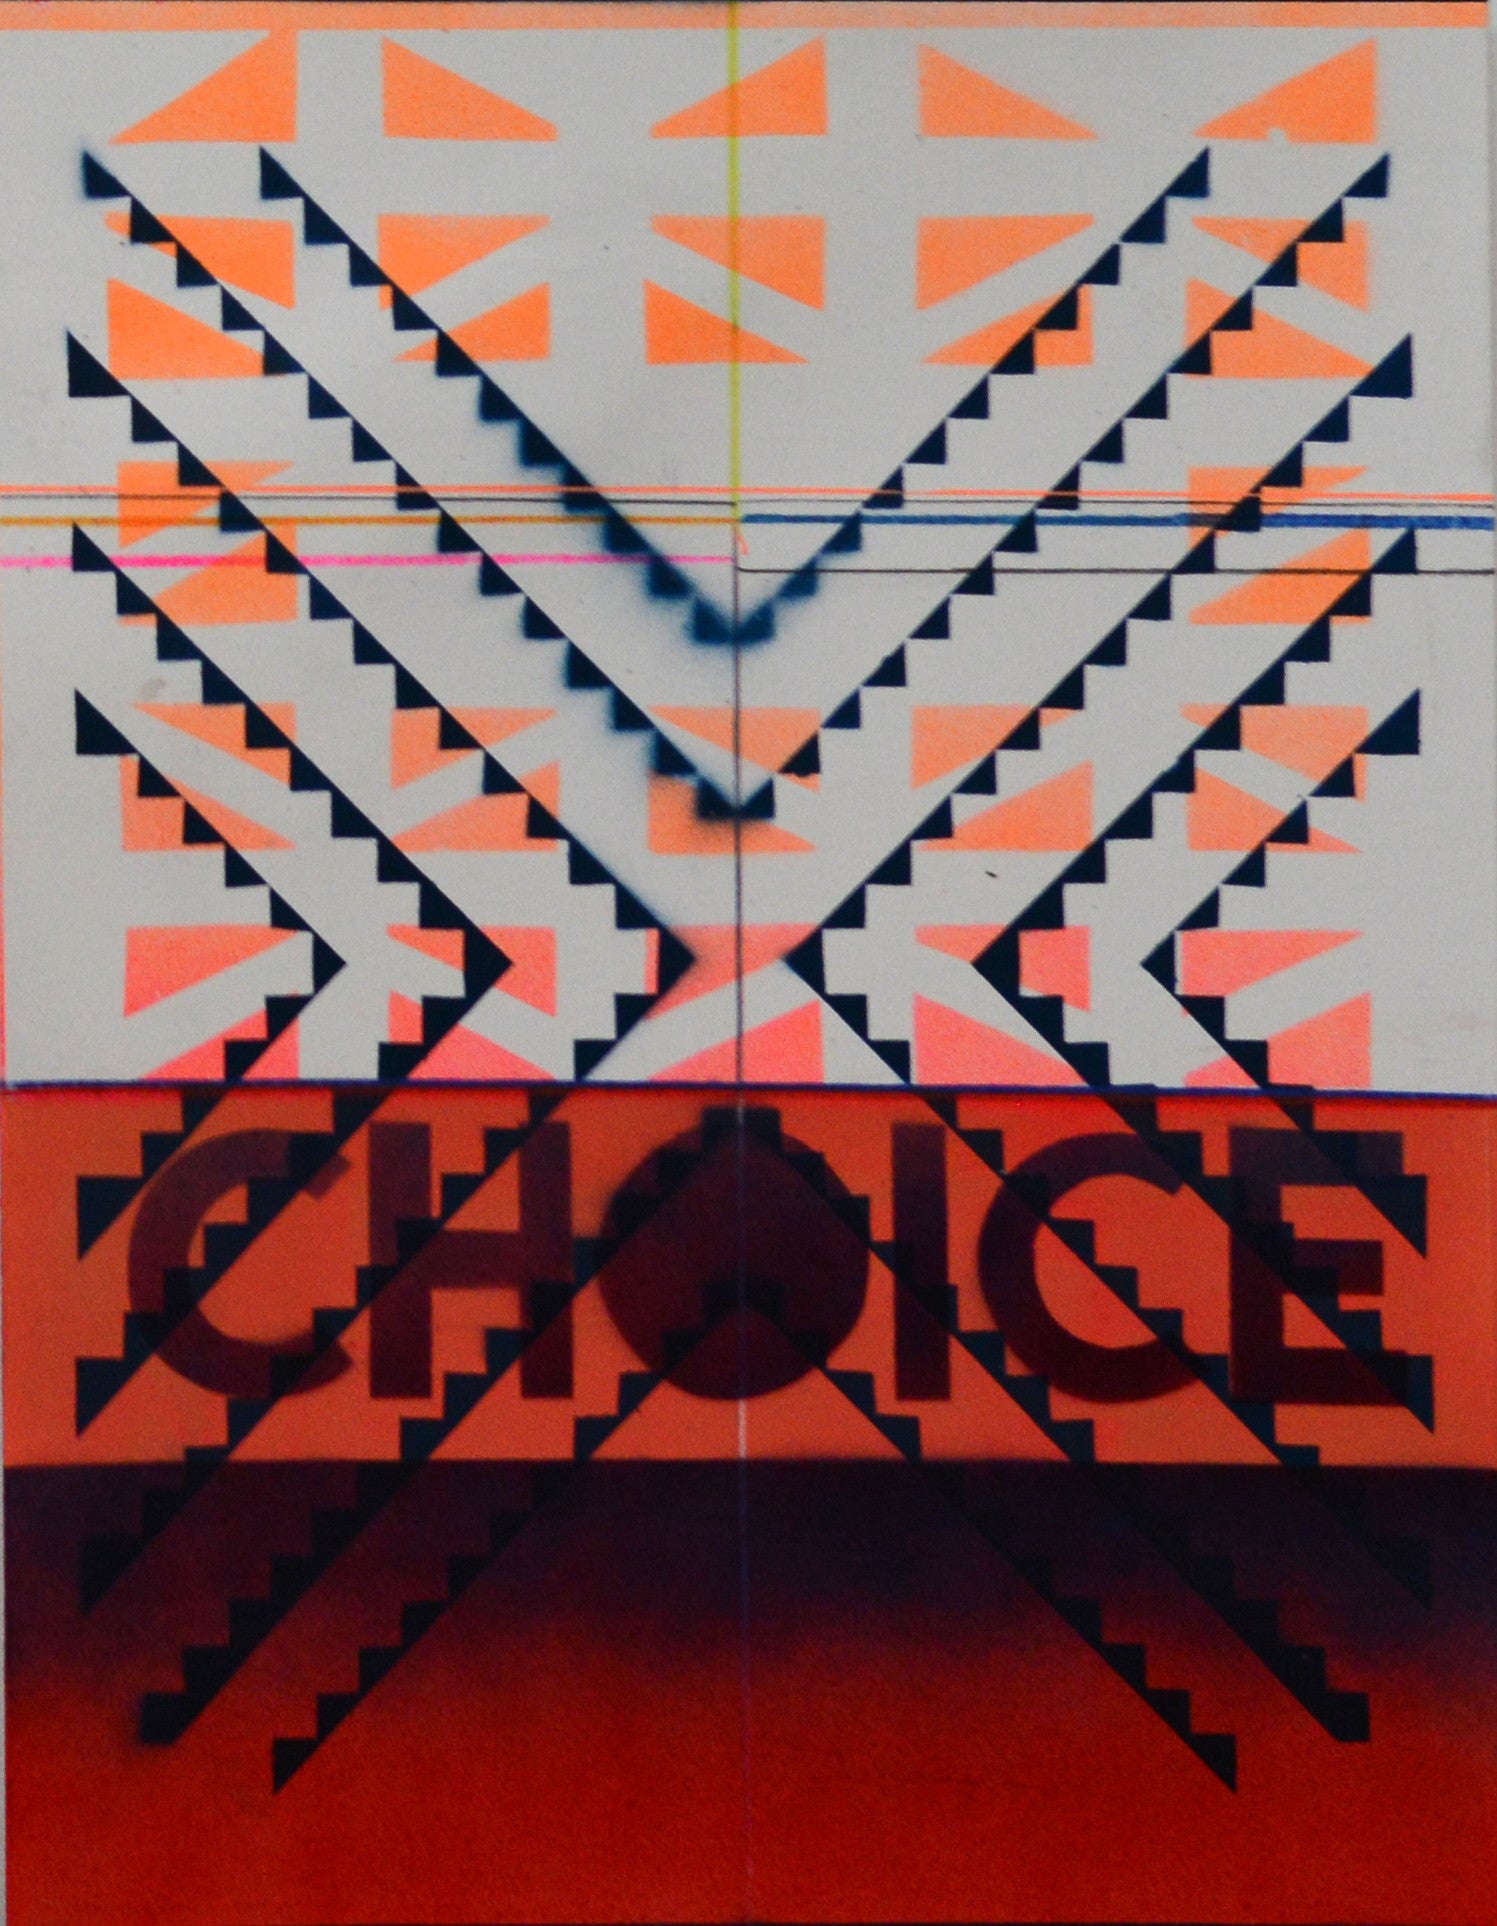 Kristen Schiele, "Choice/2"